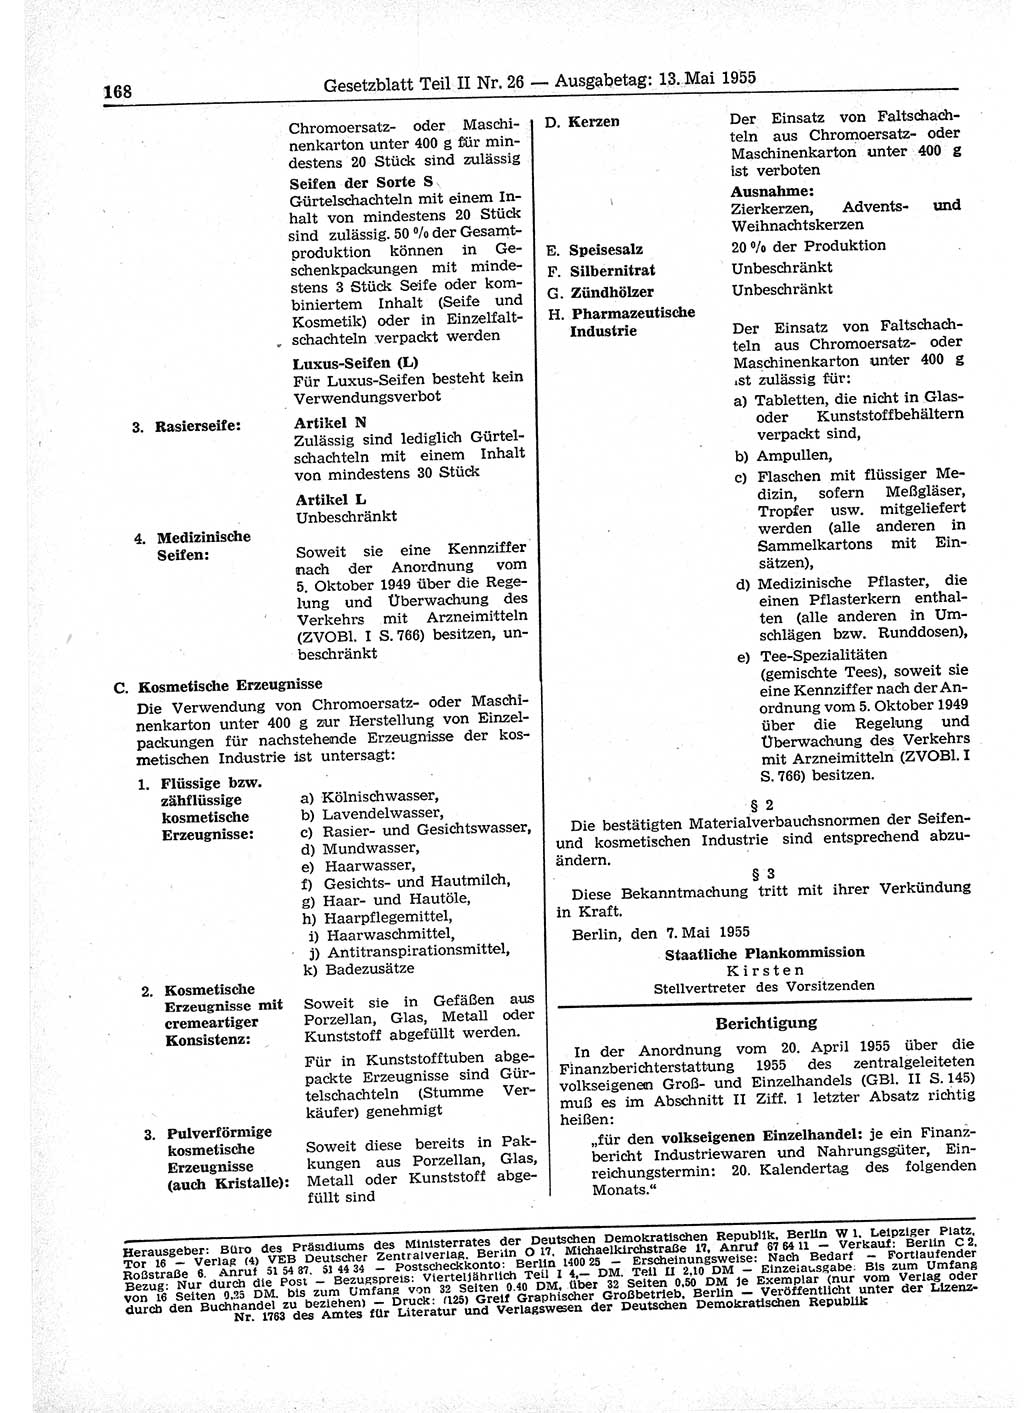 Gesetzblatt (GBl.) der Deutschen Demokratischen Republik (DDR) Teil ⅠⅠ 1955, Seite 168 (GBl. DDR ⅠⅠ 1955, S. 168)